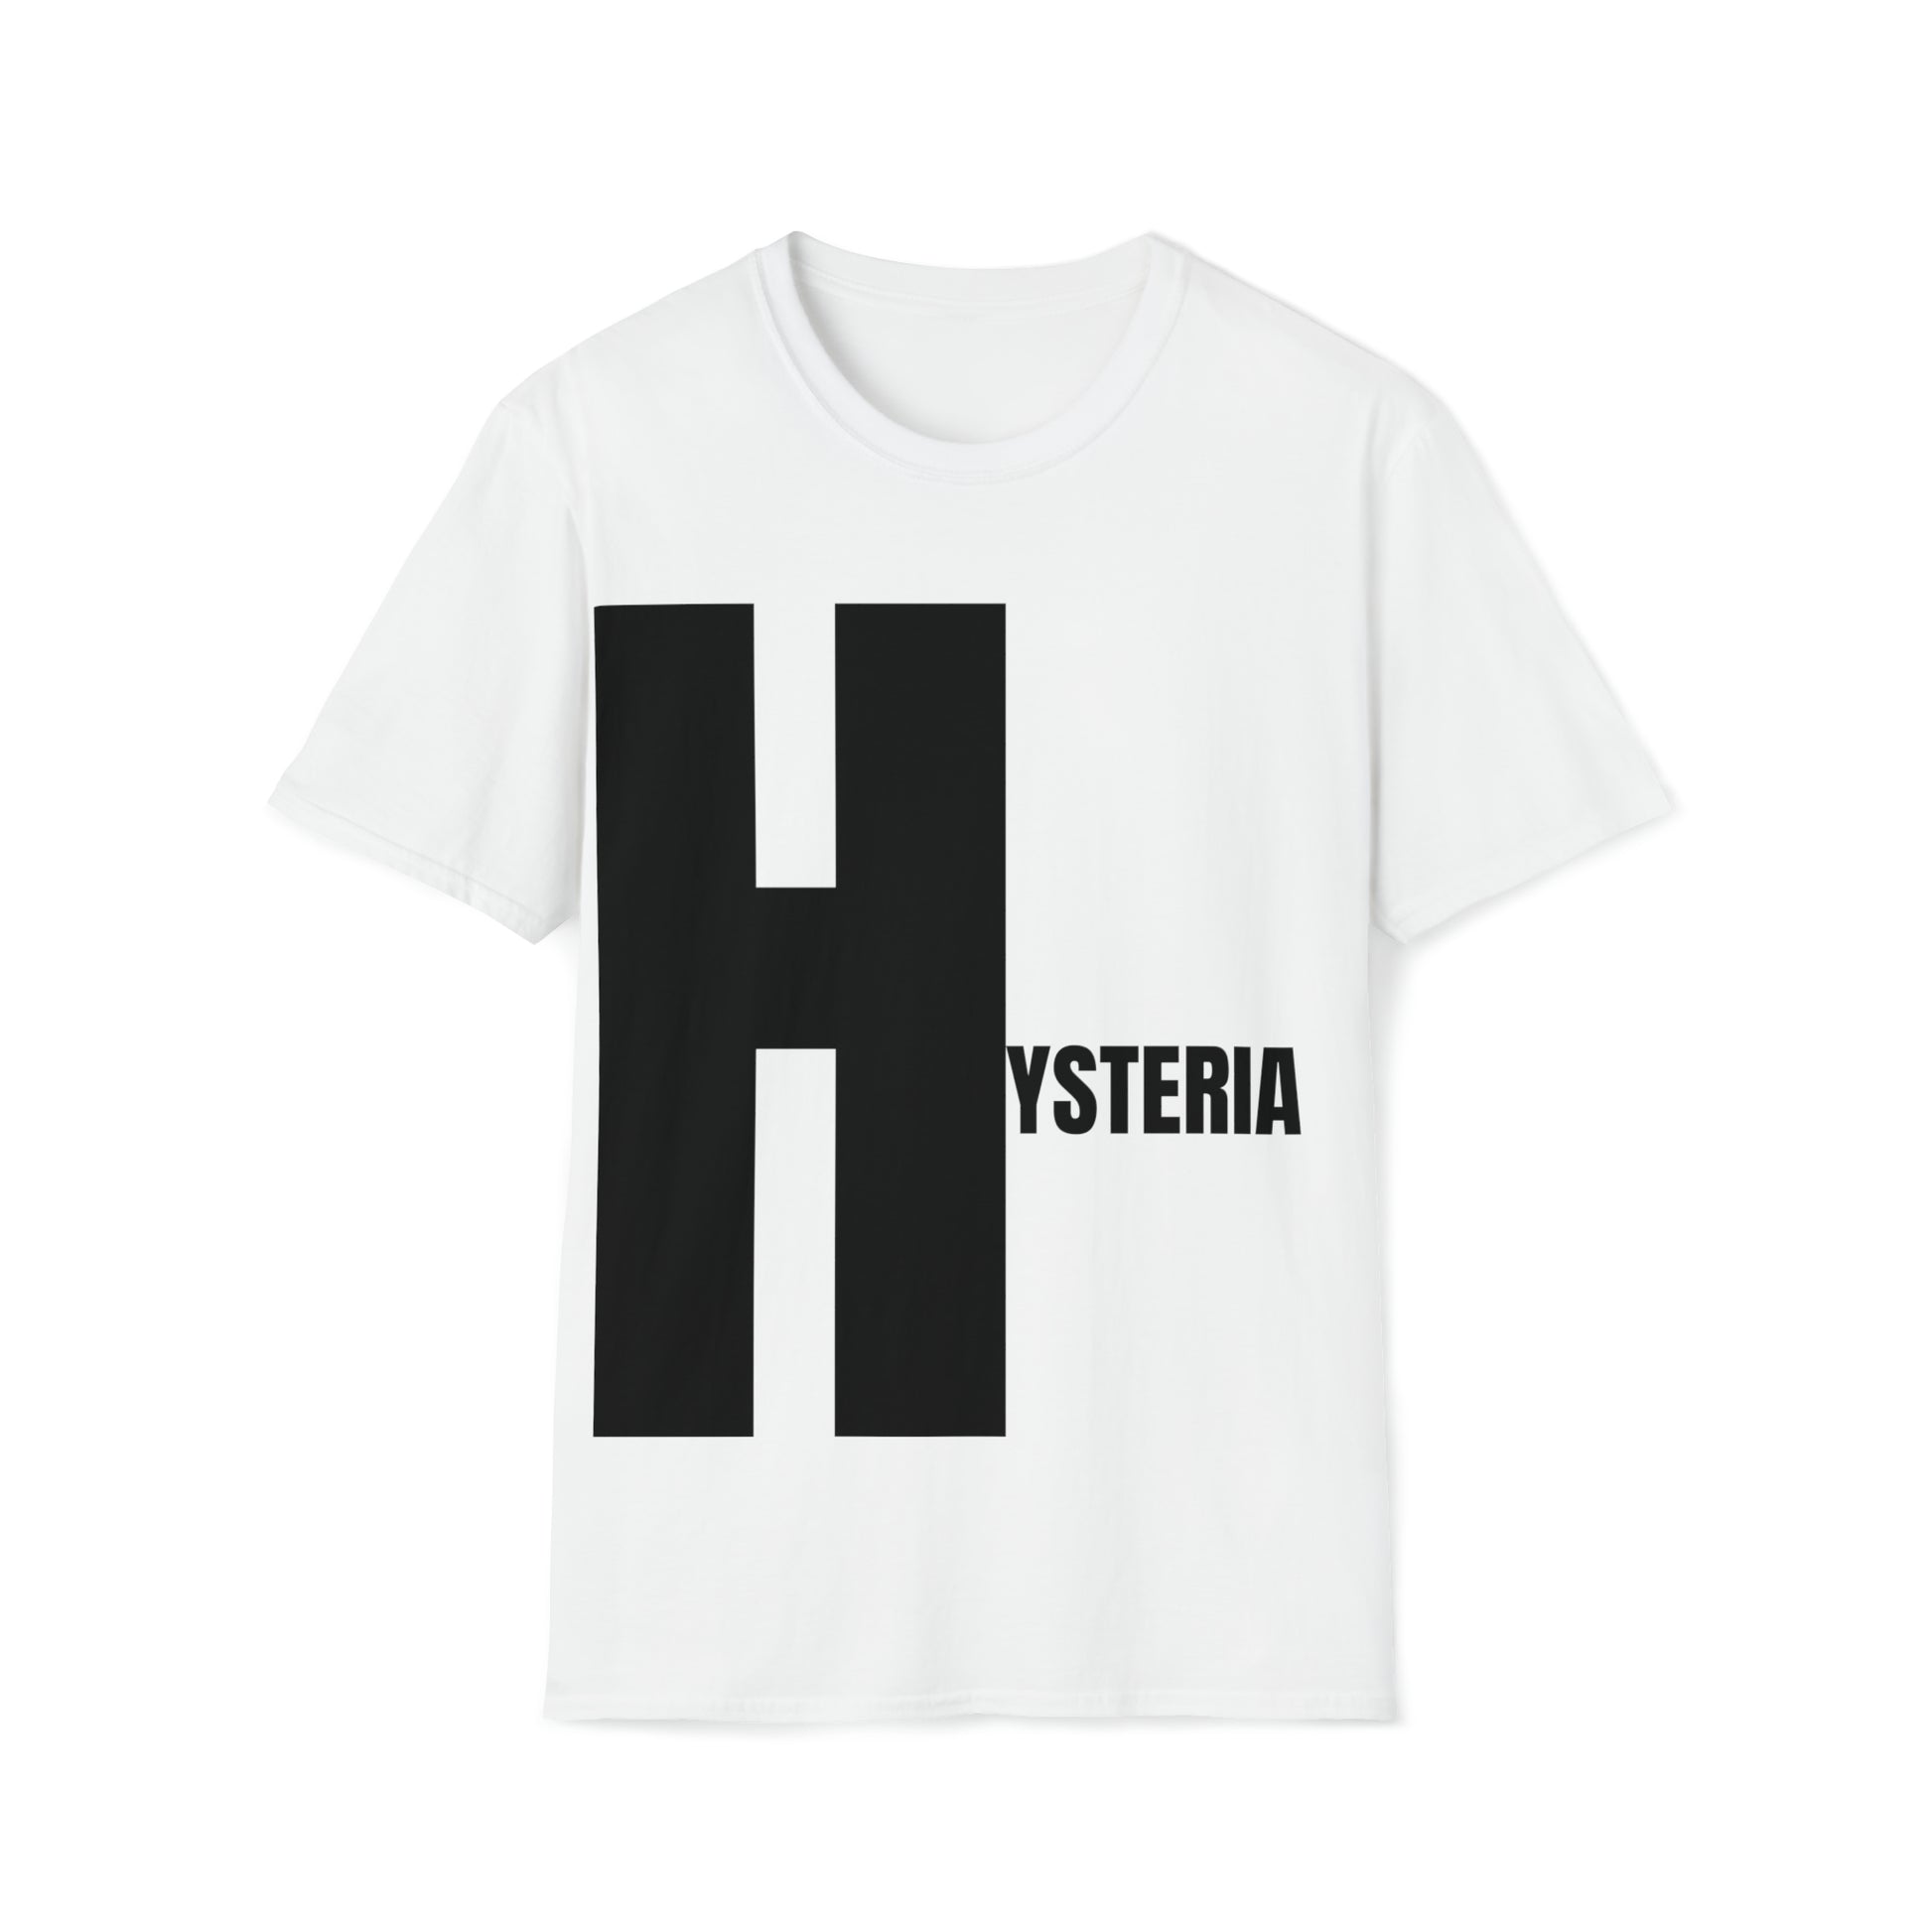 Hysteria tshirt